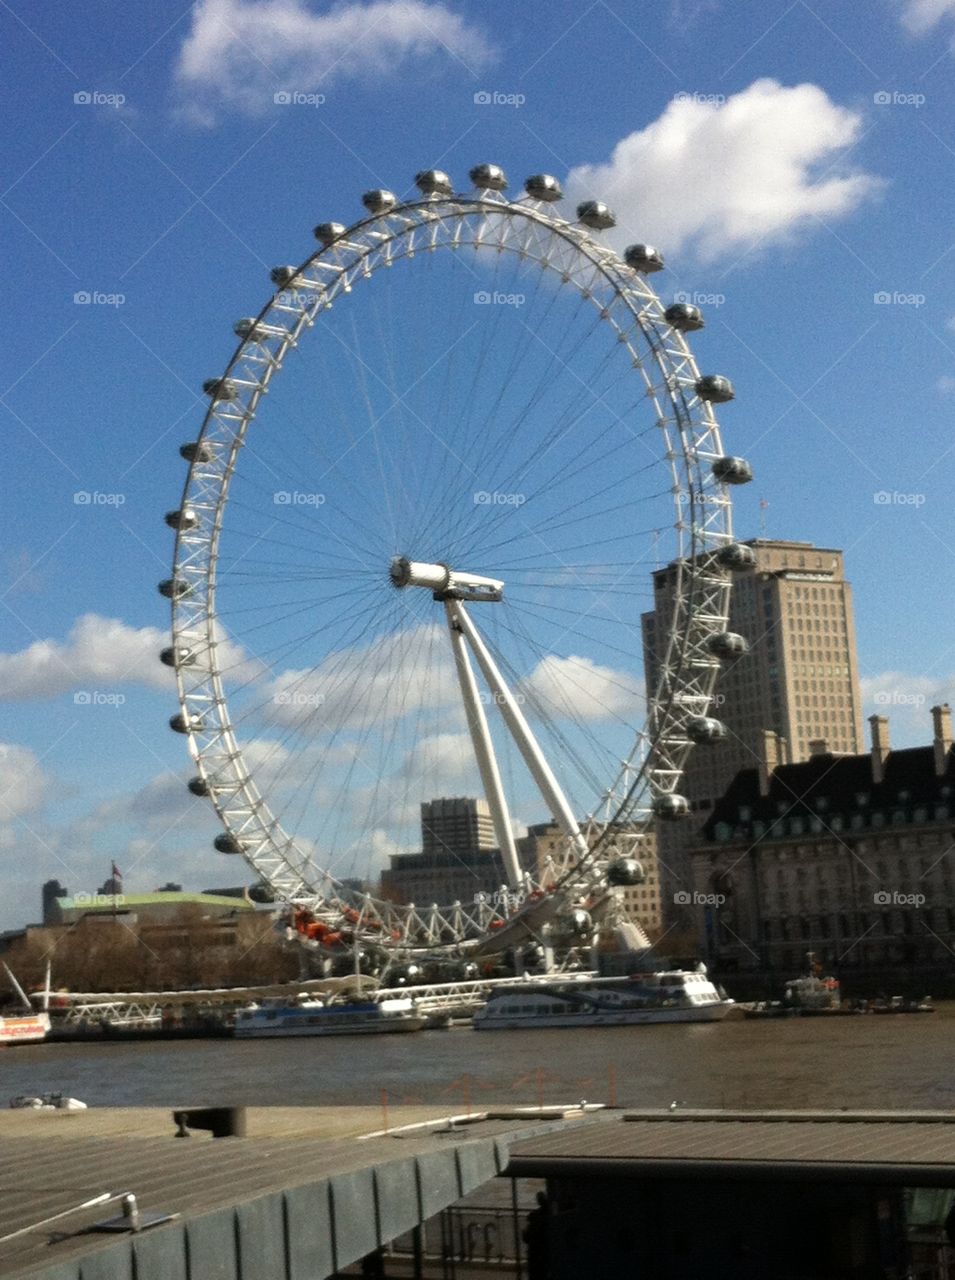 London Eye. Millenium Wheel London Eye